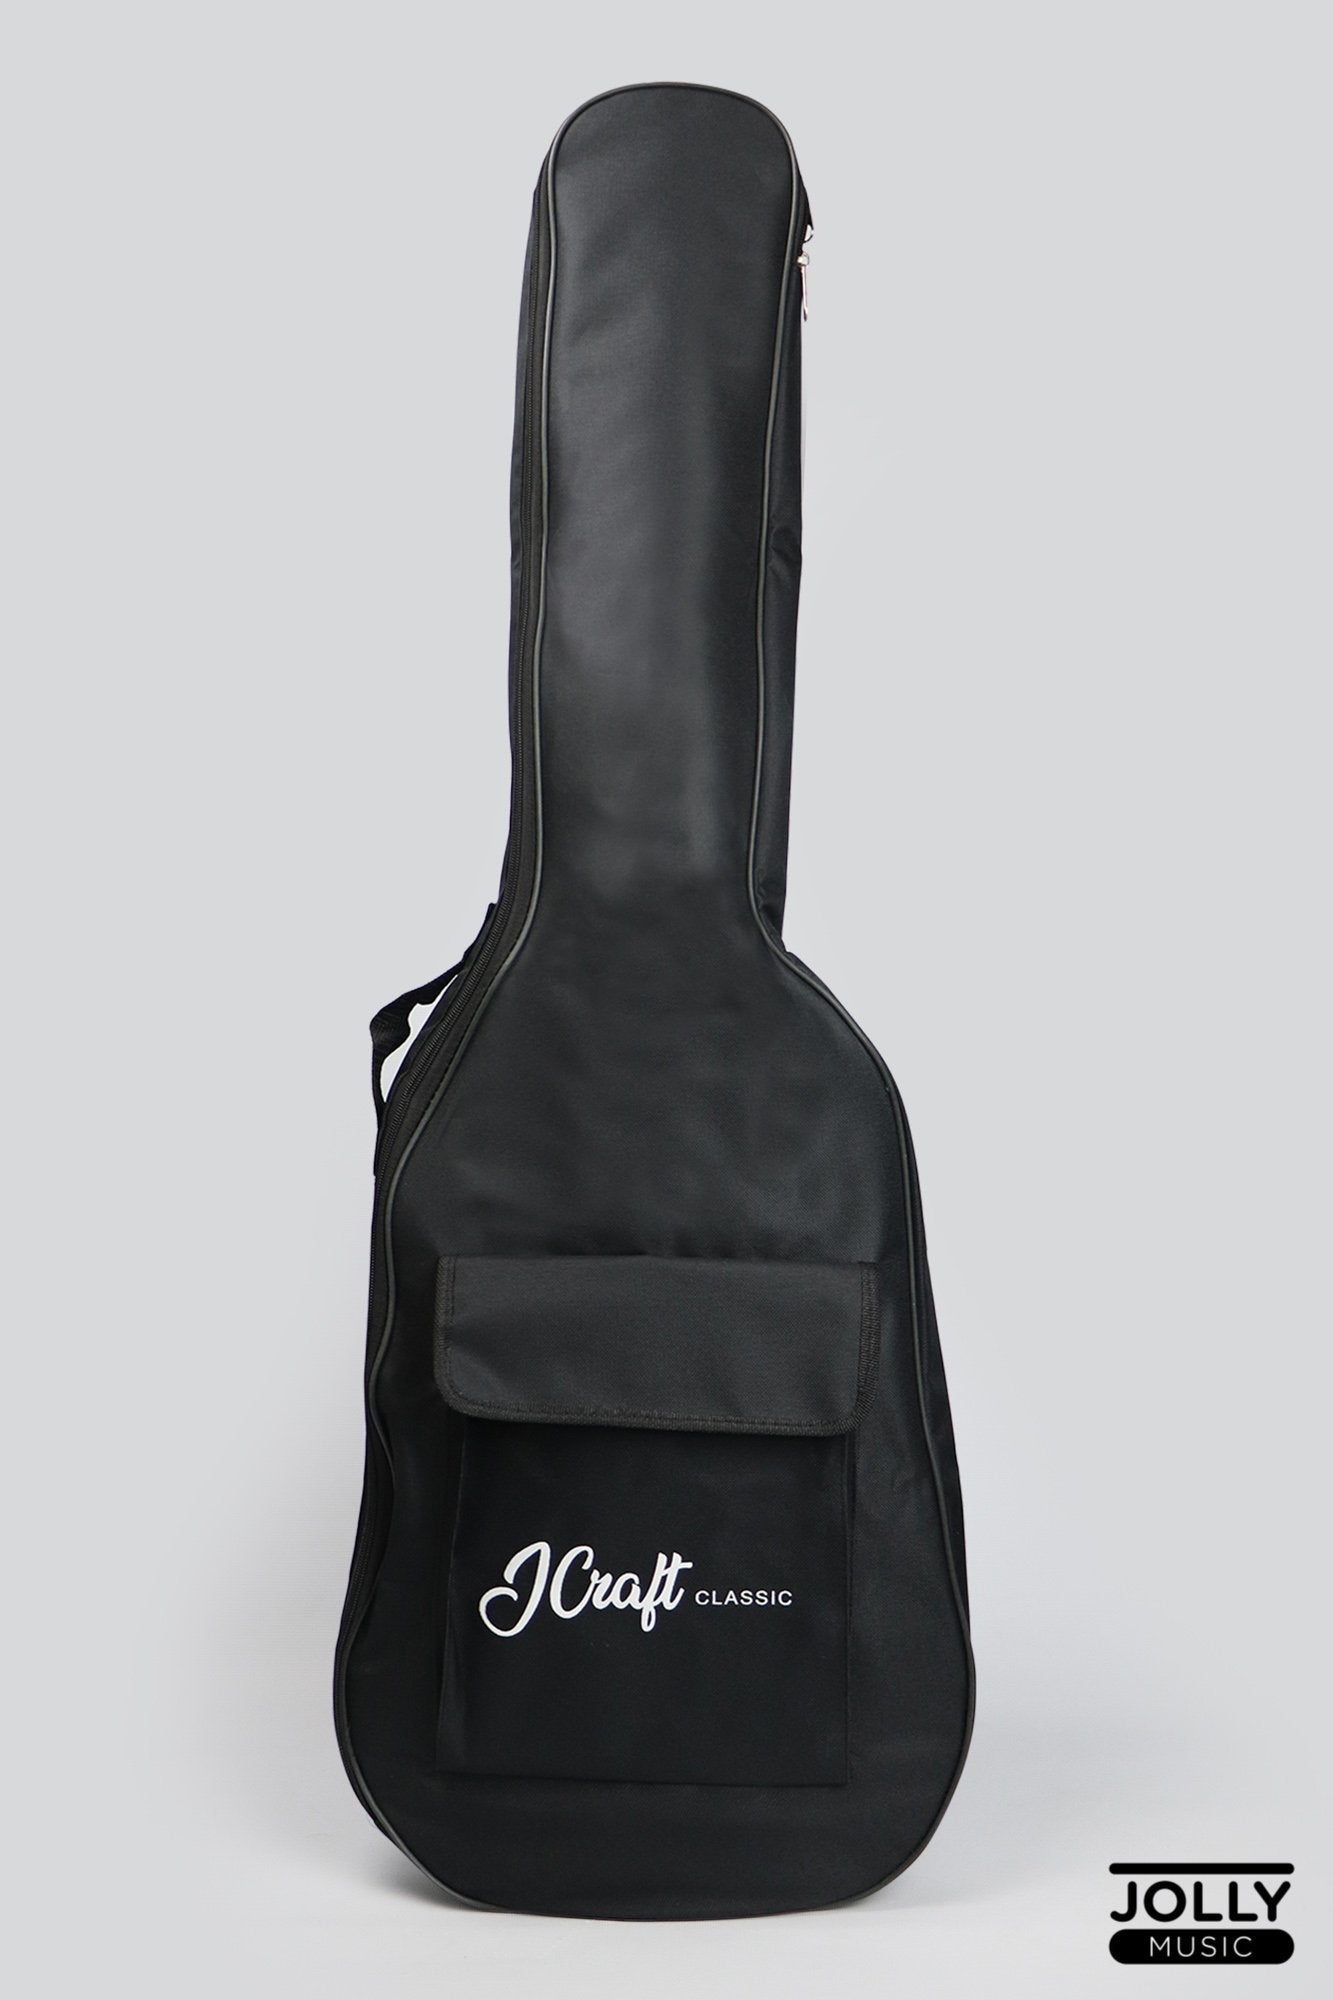 JCraft JB-1 J-Offset 5-String Bass Guitar with Gigbag - Natural